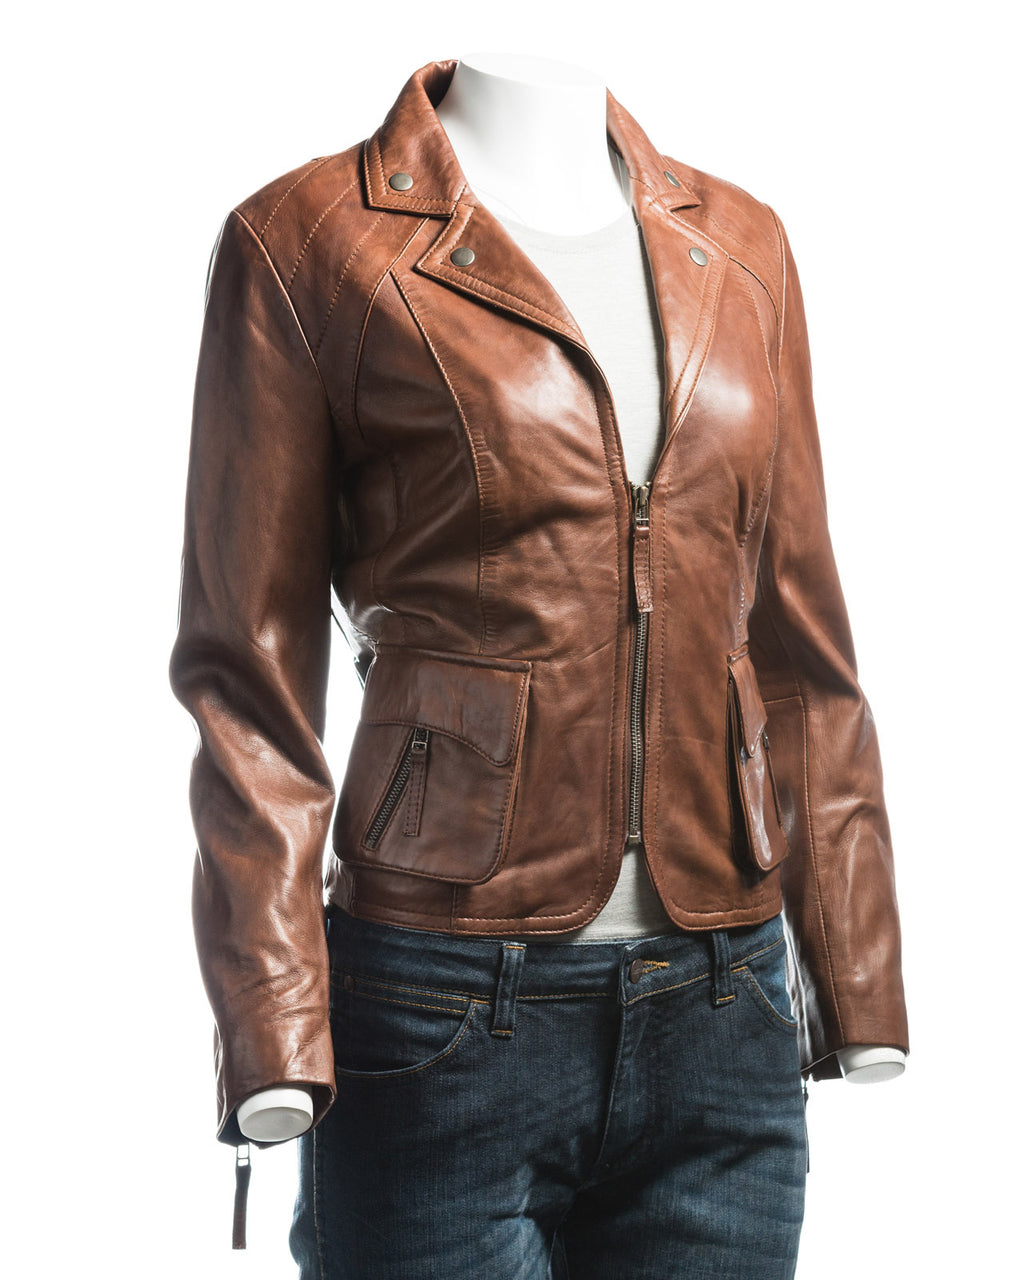 Ladies Short Blazer Style Zipped Leather Jacket: Marissa